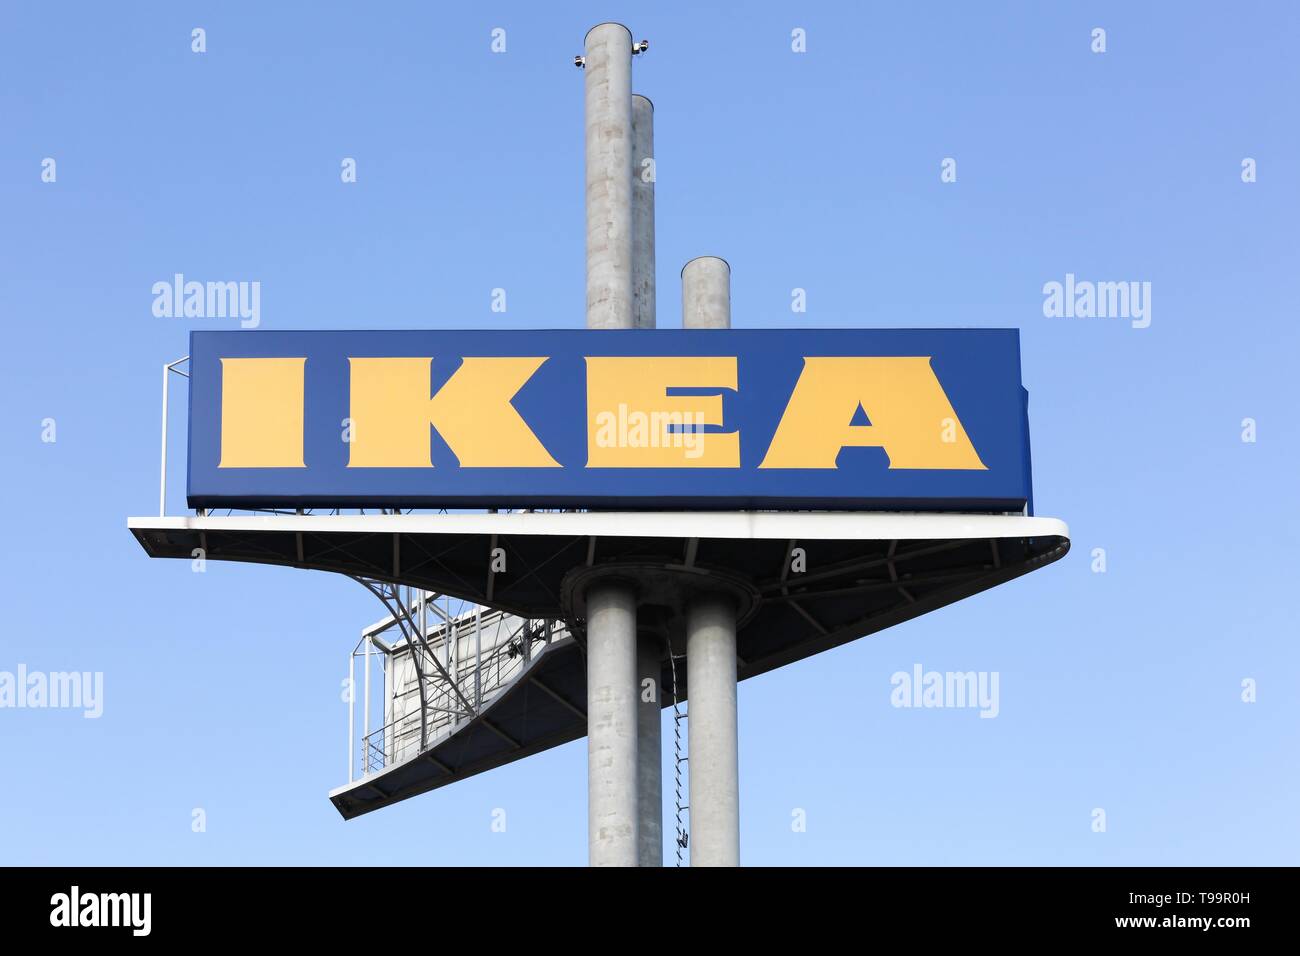 Stuhr, Allemagne - septembre 1, 2018 : IKEA signe sur un poteau. IKEA est un groupe multinational qui conçoit, vend des meubles prêts à assembler Banque D'Images